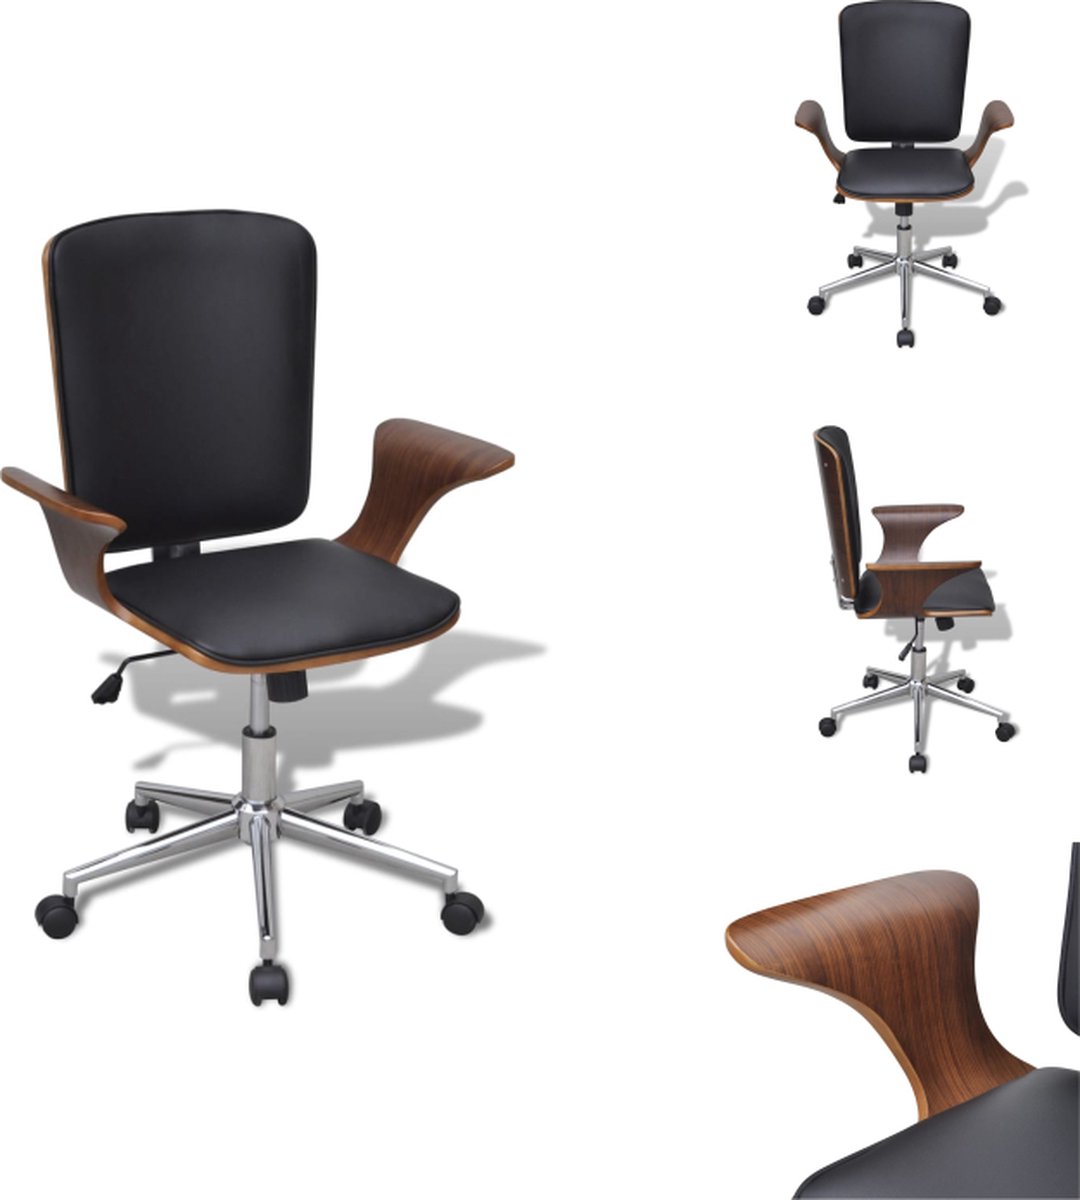 VidaXL Kantoormeubilair ergonomische bureaustoel walnotenhouten frame 69 x 57 cm (B x D) hoogwaardig kunstleer Bureaustoel